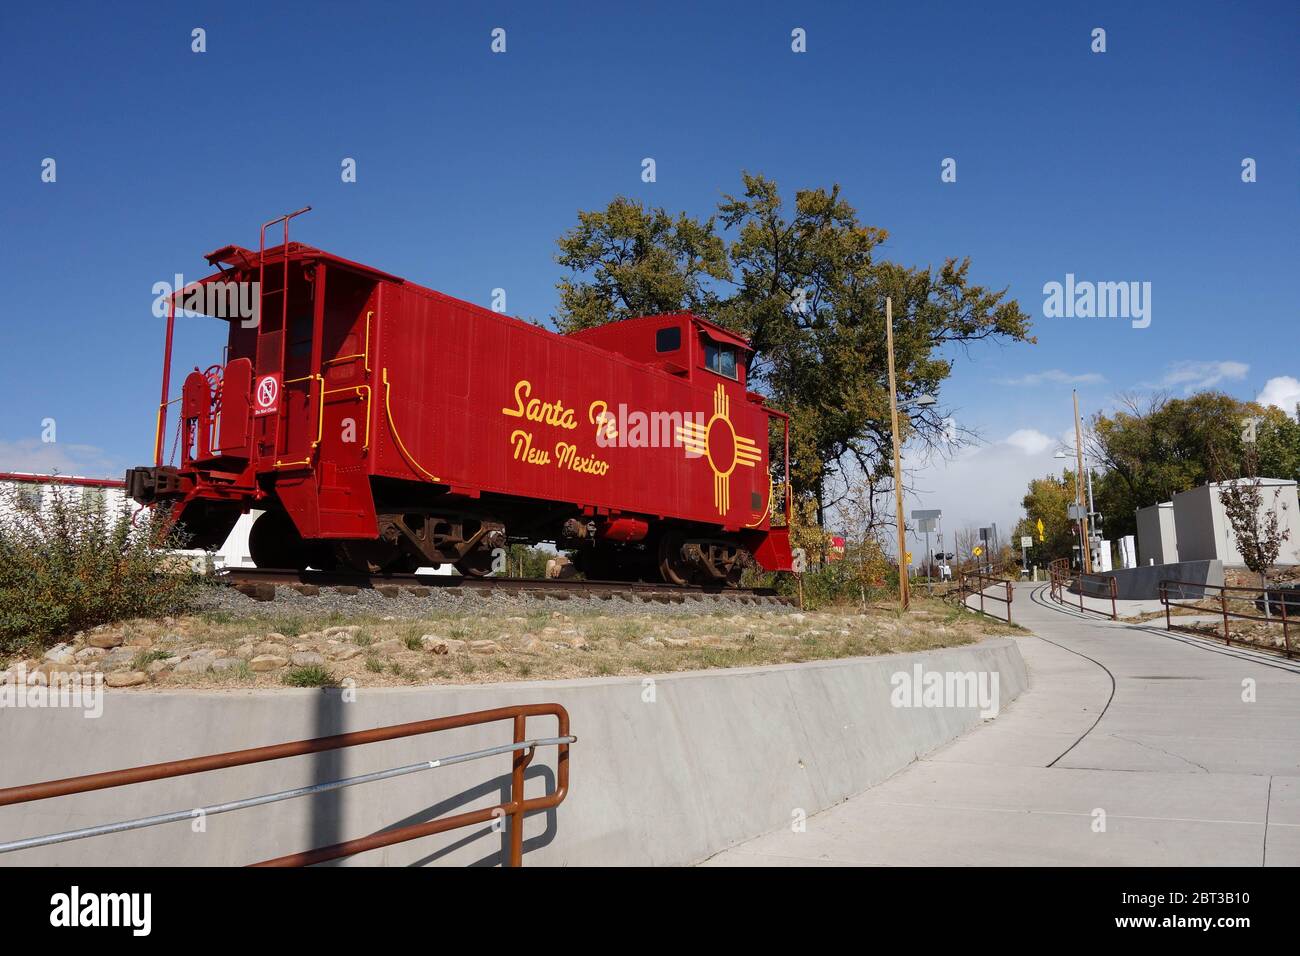 Red Santa Fe Locomotive on display in Santa Fe, NM Stock Photo